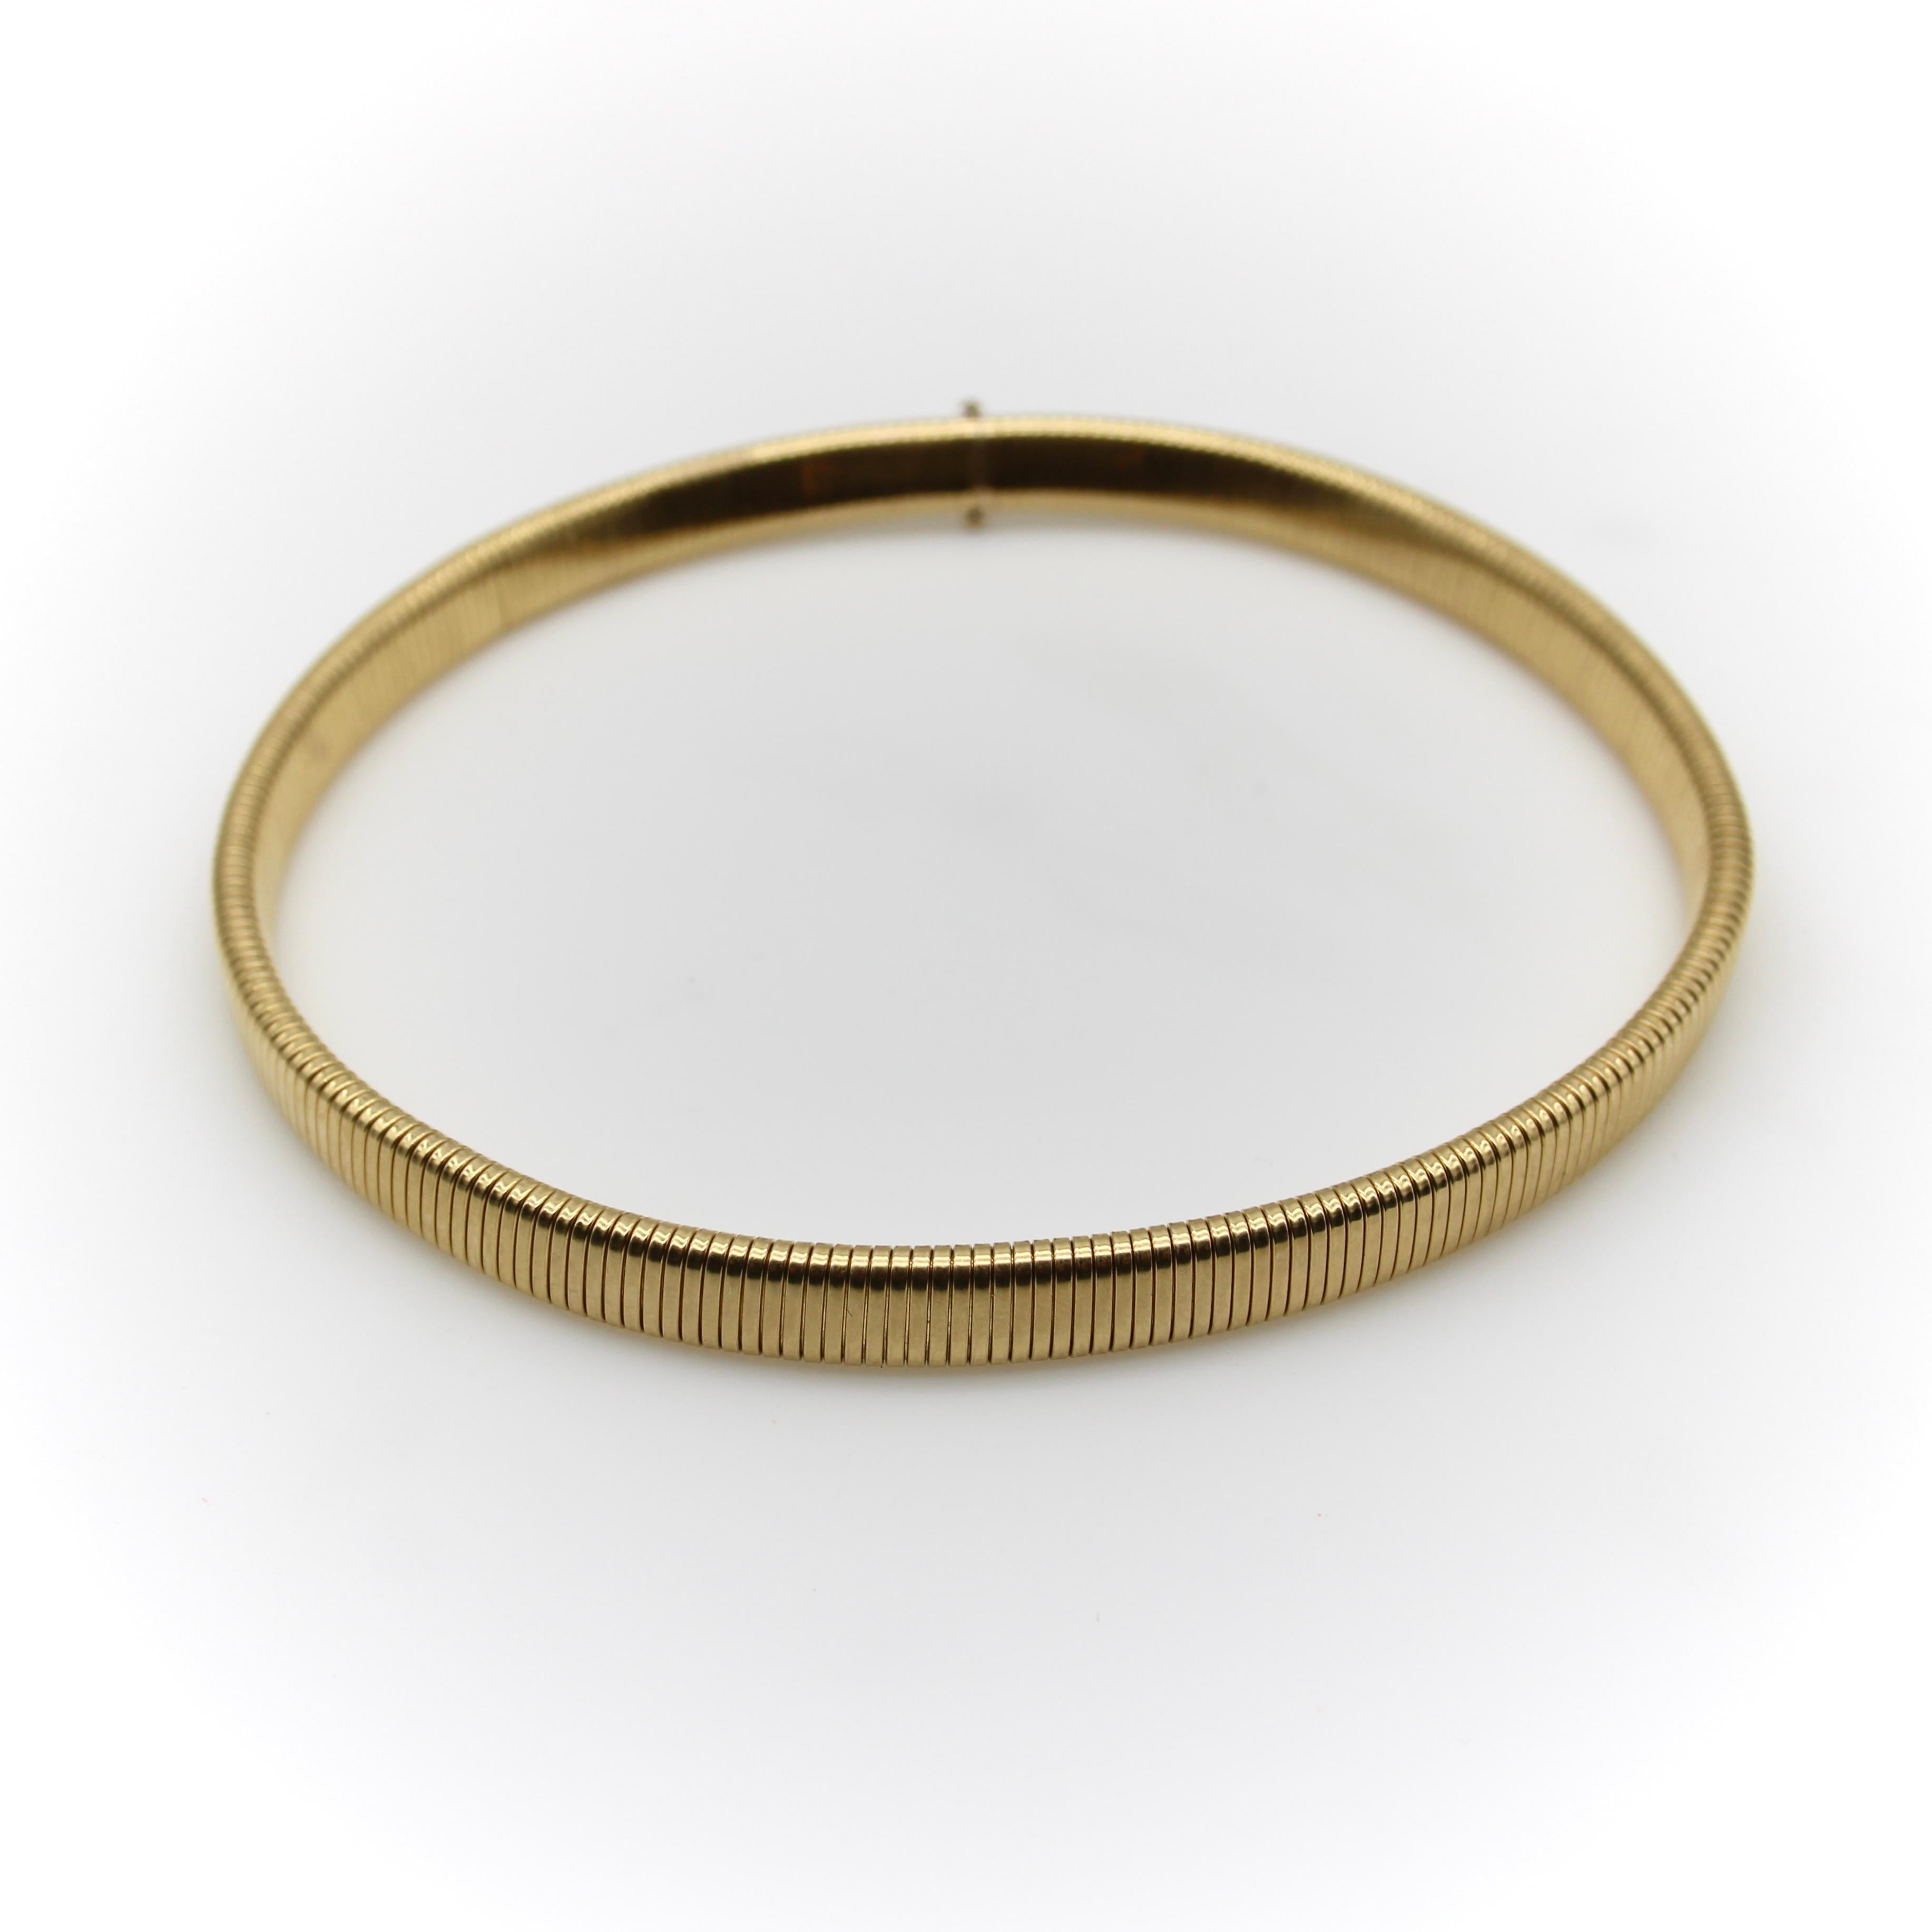 CIRCA 1970, diese Halskette aus 14-karätigem Gold ist eine Wiederbelebung der Ära des Zweiten Weltkriegs.  Schmuckherstellungstechnik namens Tubogas. Ein hohler, biegsamer Schlauch aus ineinander greifenden Goldgliedern sorgt für eine lustige und